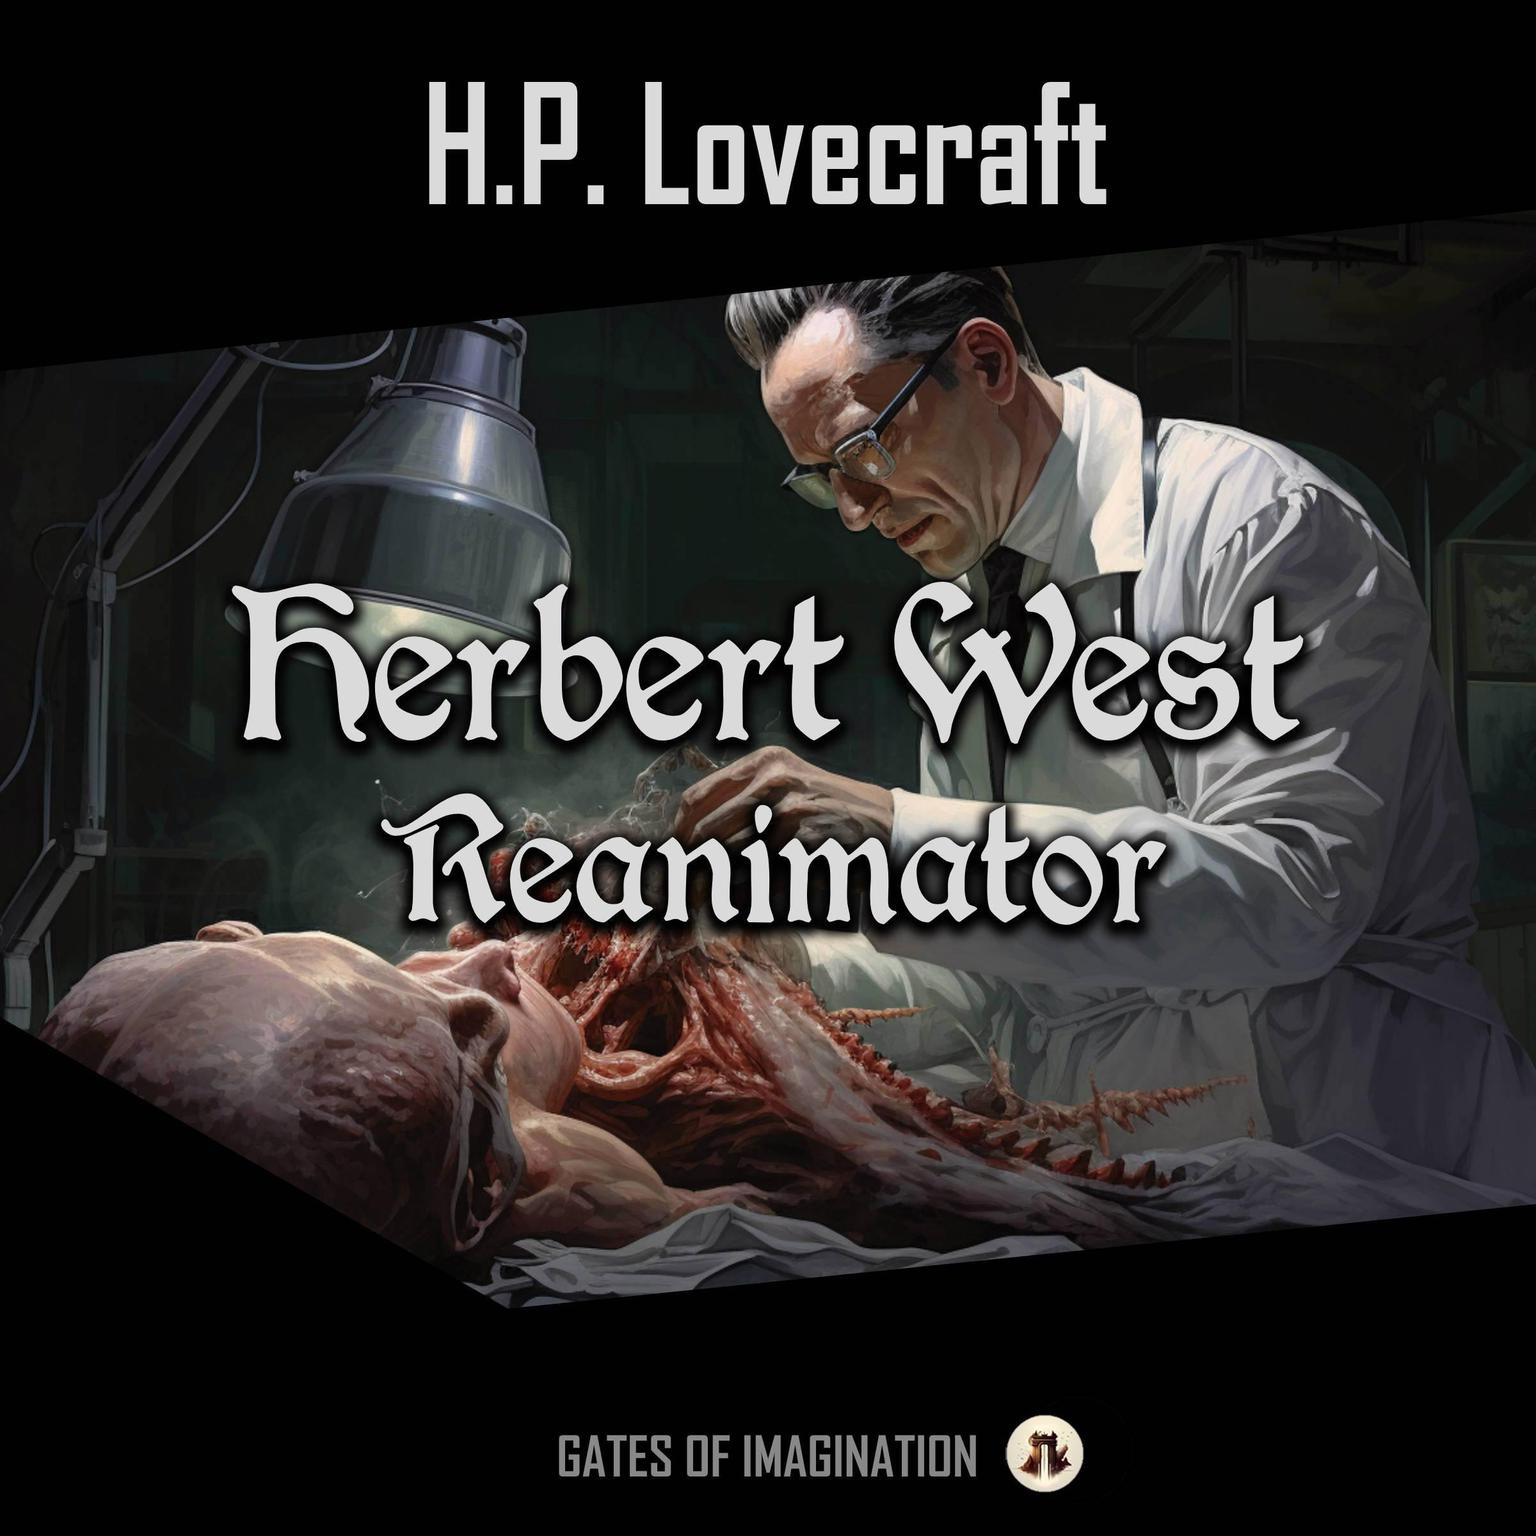 Herbert West – Reanimator Audiobook, by H. P. Lovecraft